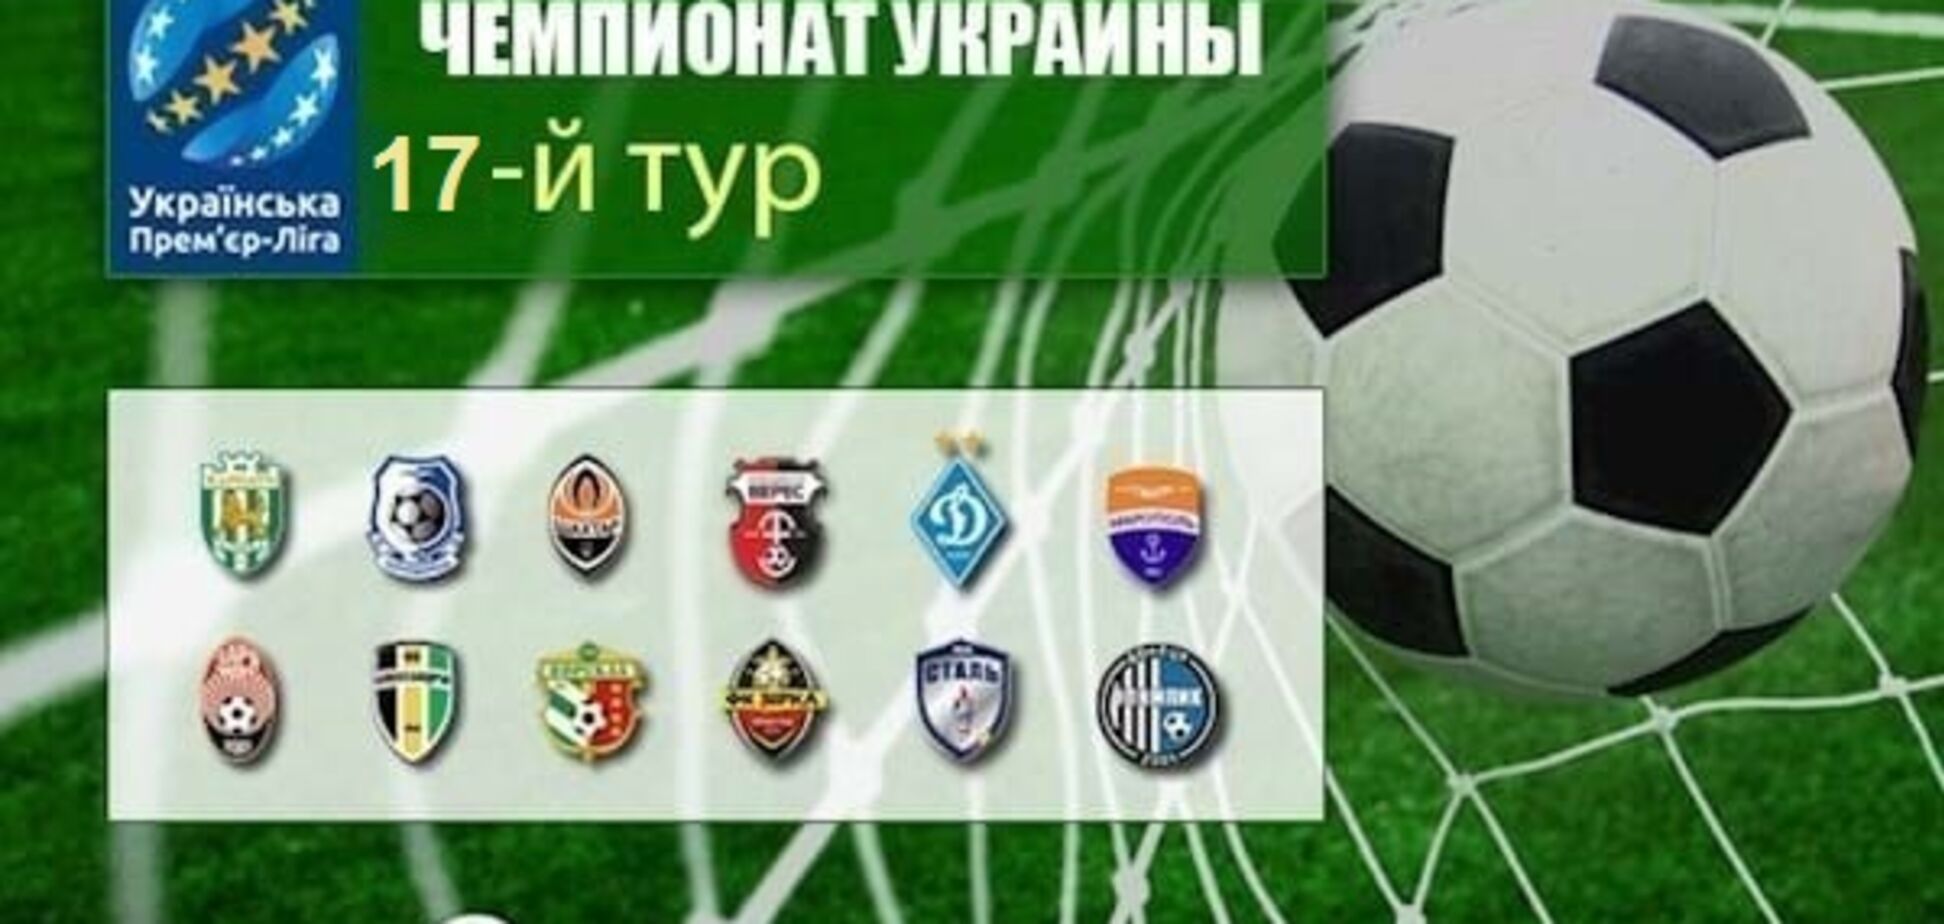 17-й тур чемпионата Украины по футболу: результаты, обзоры, таблица